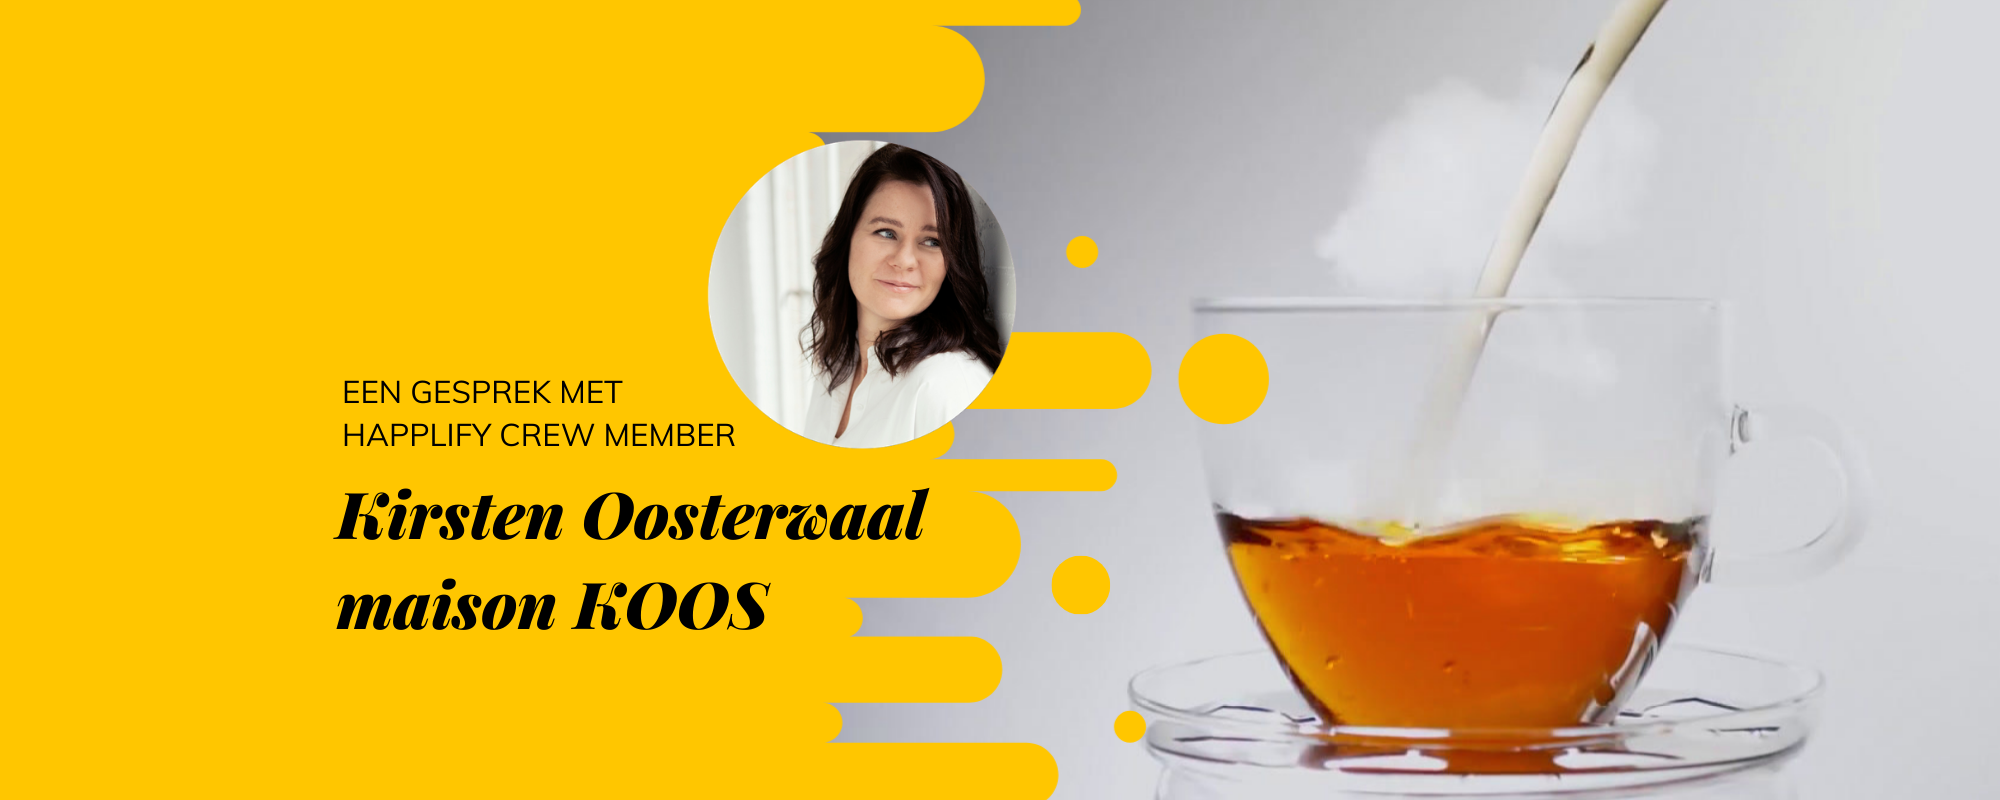 Video interview met Kirsten Oosterwaal van maison KOOS